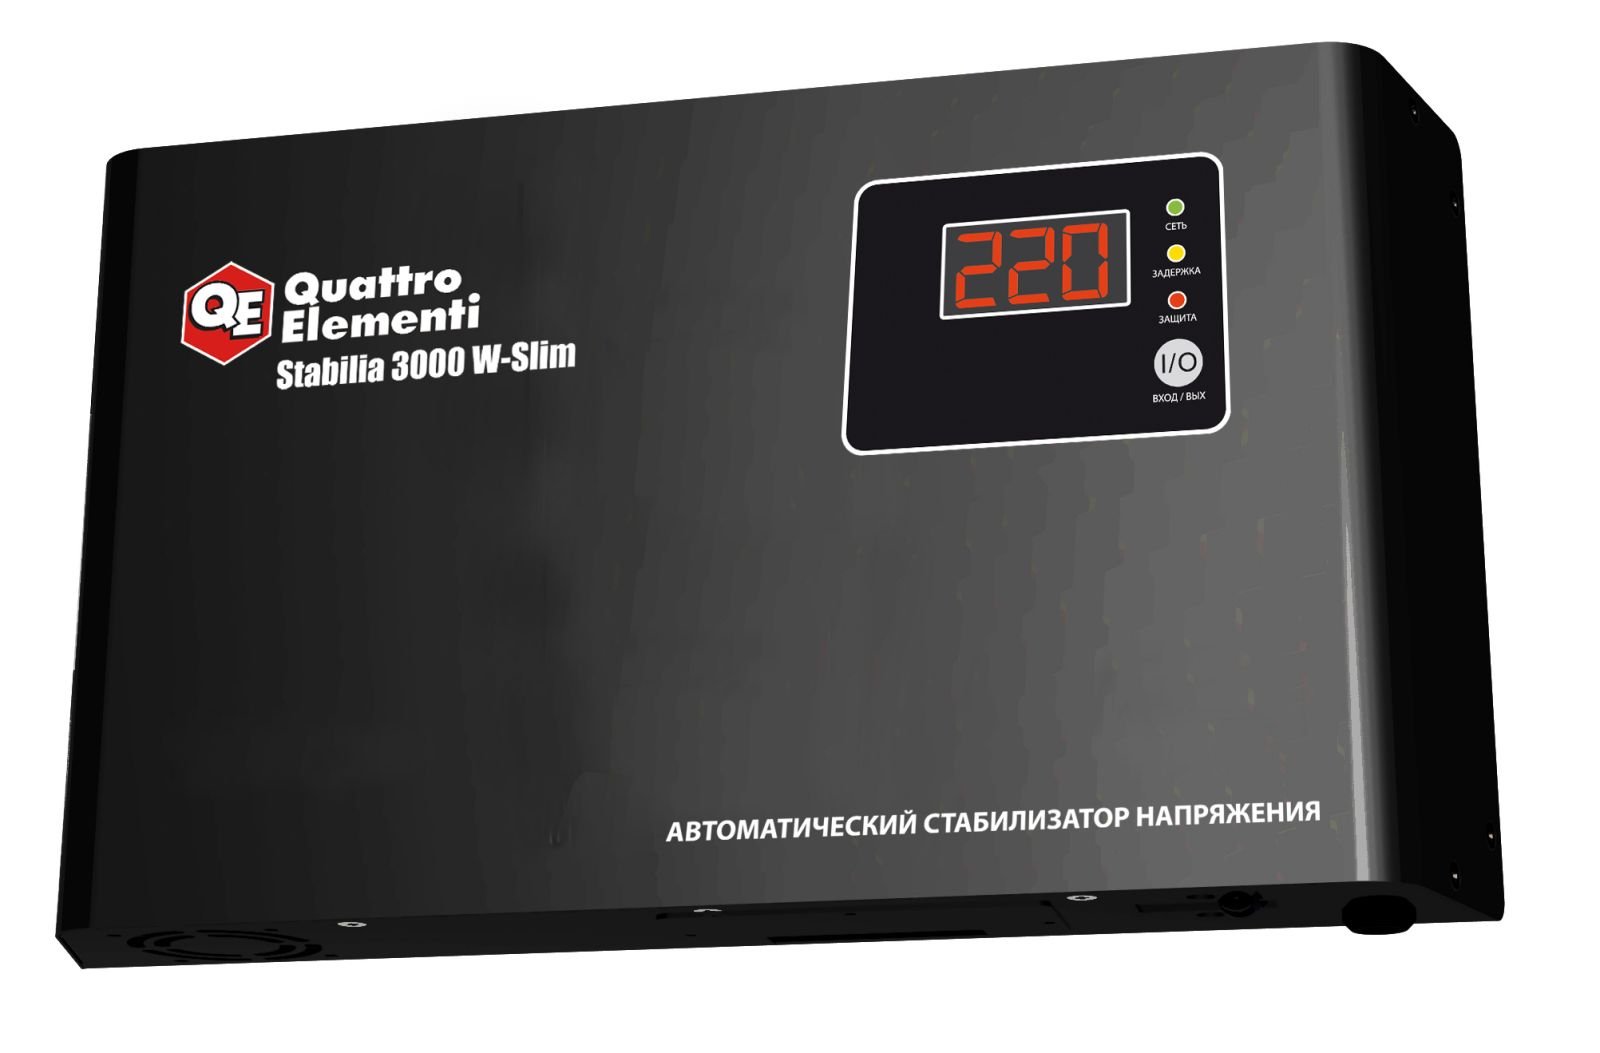 Как выглядит Quattro Elementi Stabilia W-Slim 3000